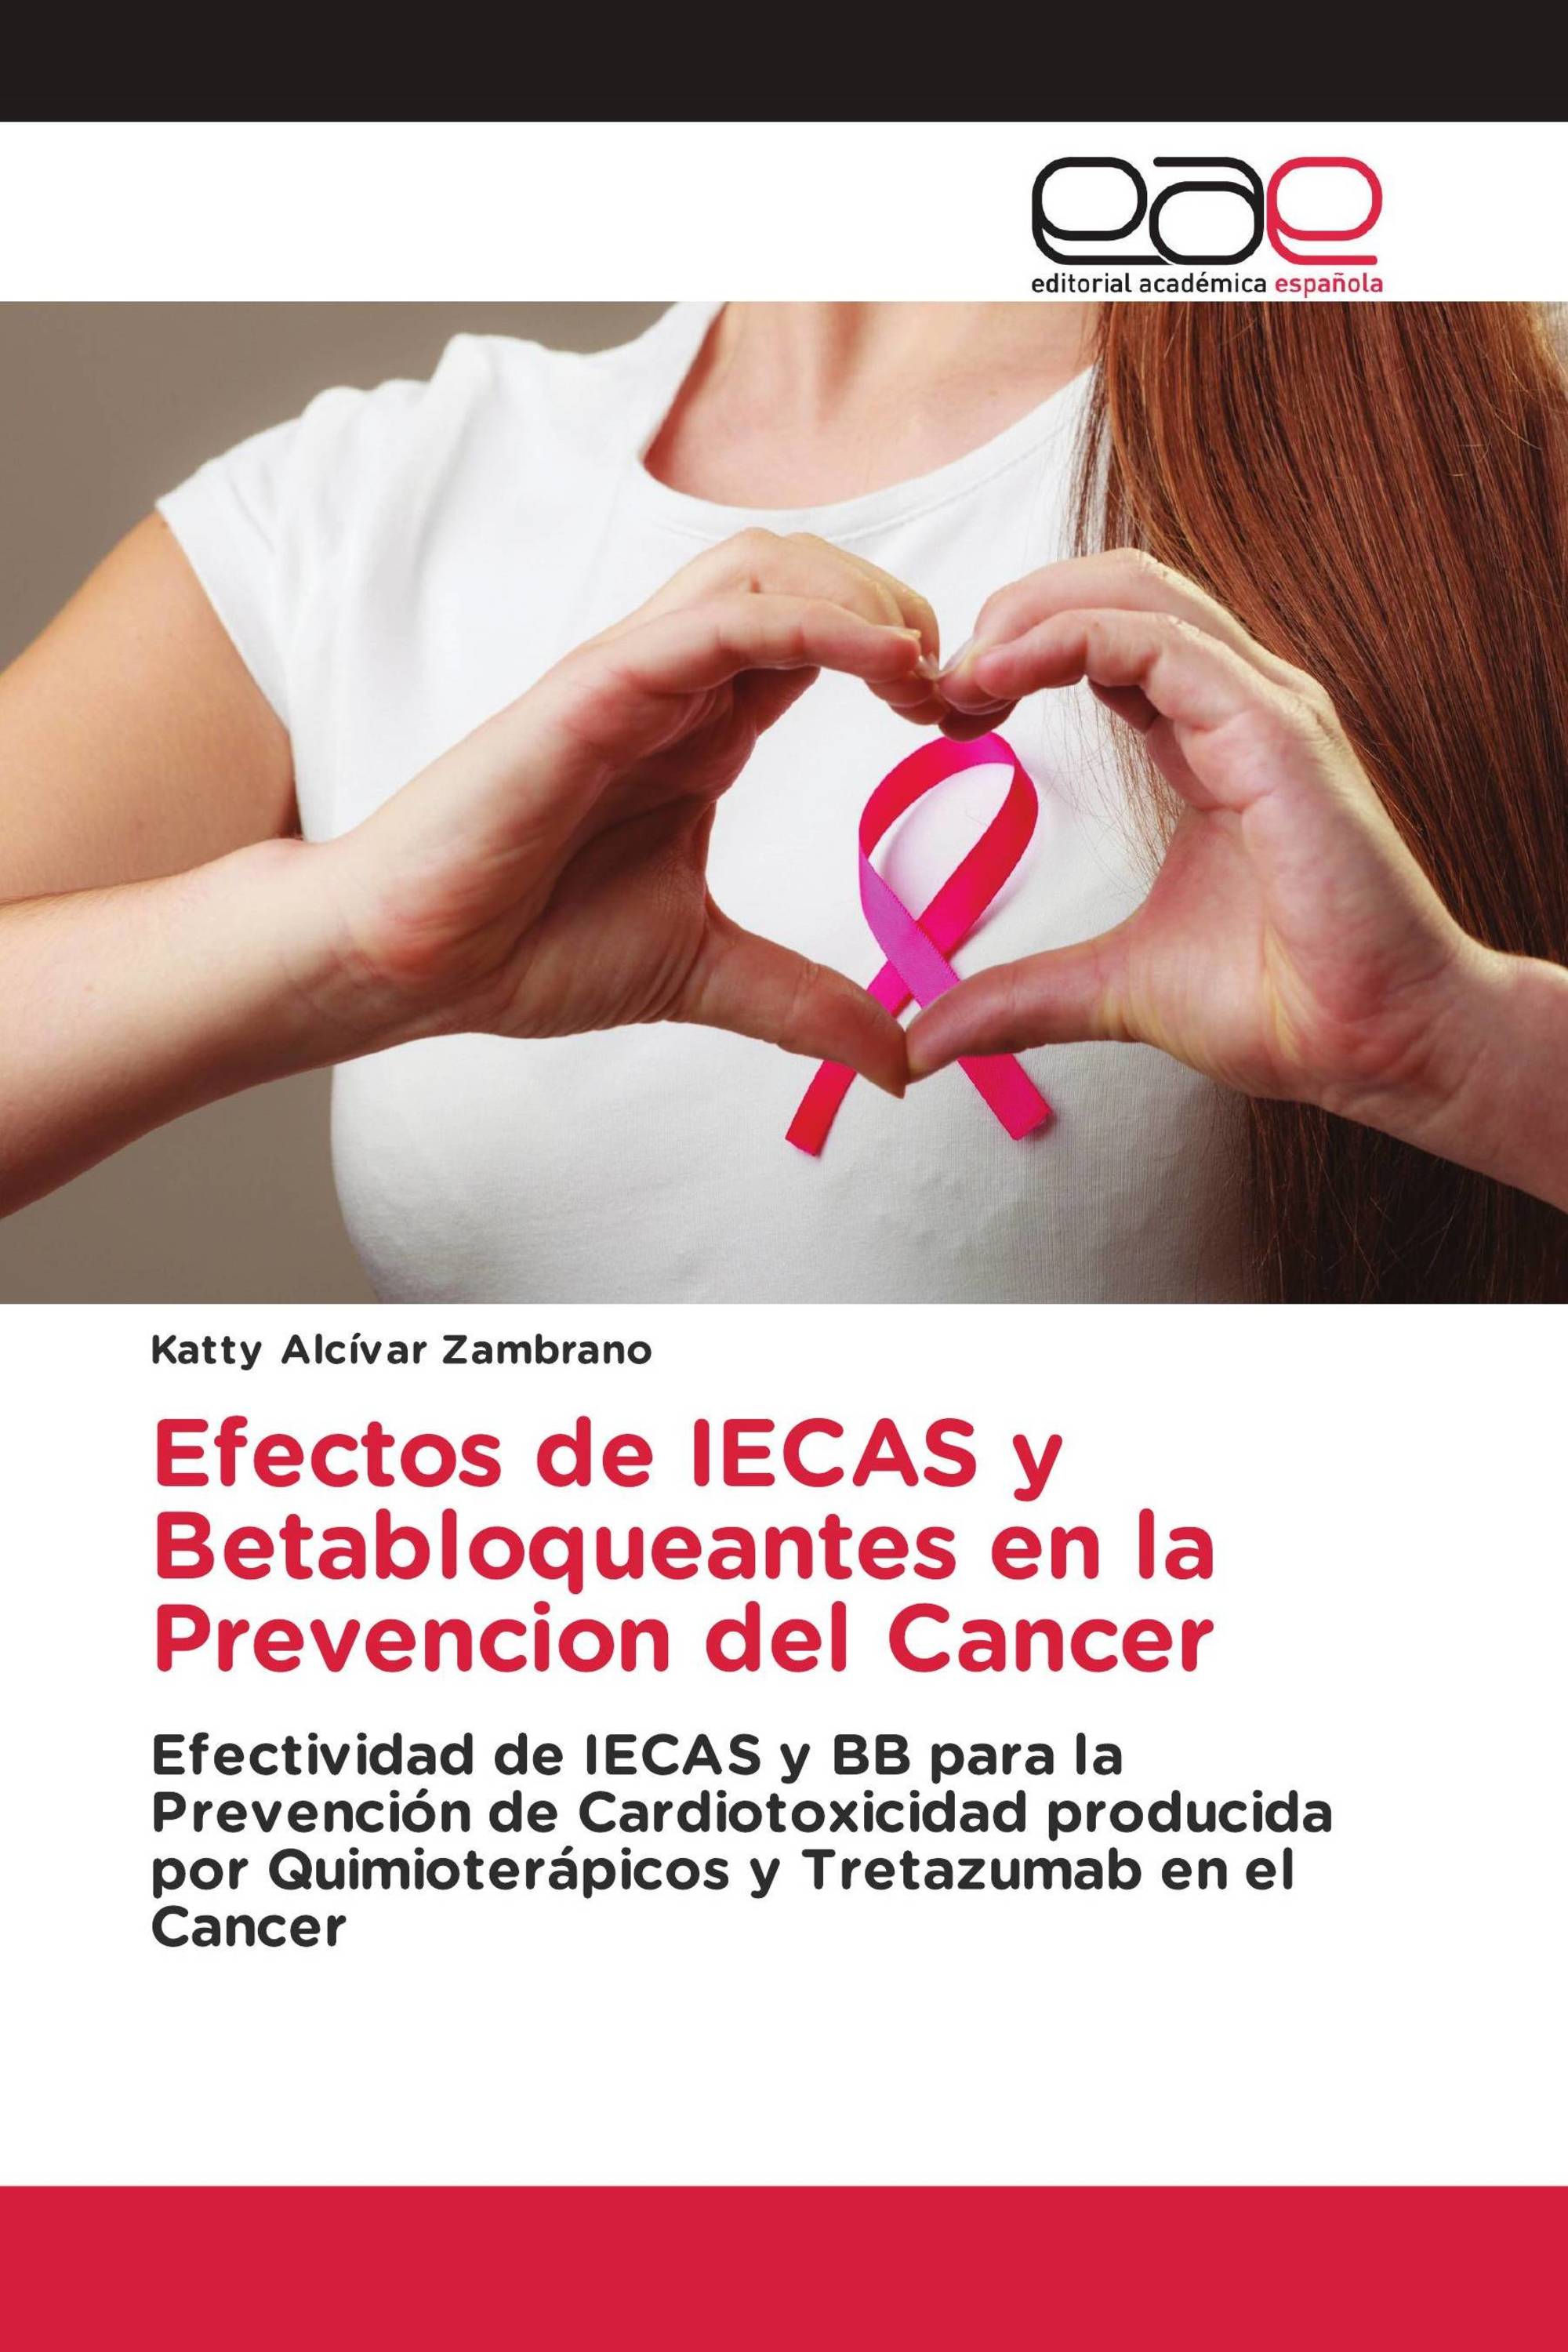 Efectos de IECAS y Betabloqueantes en la Prevencion del Cancer